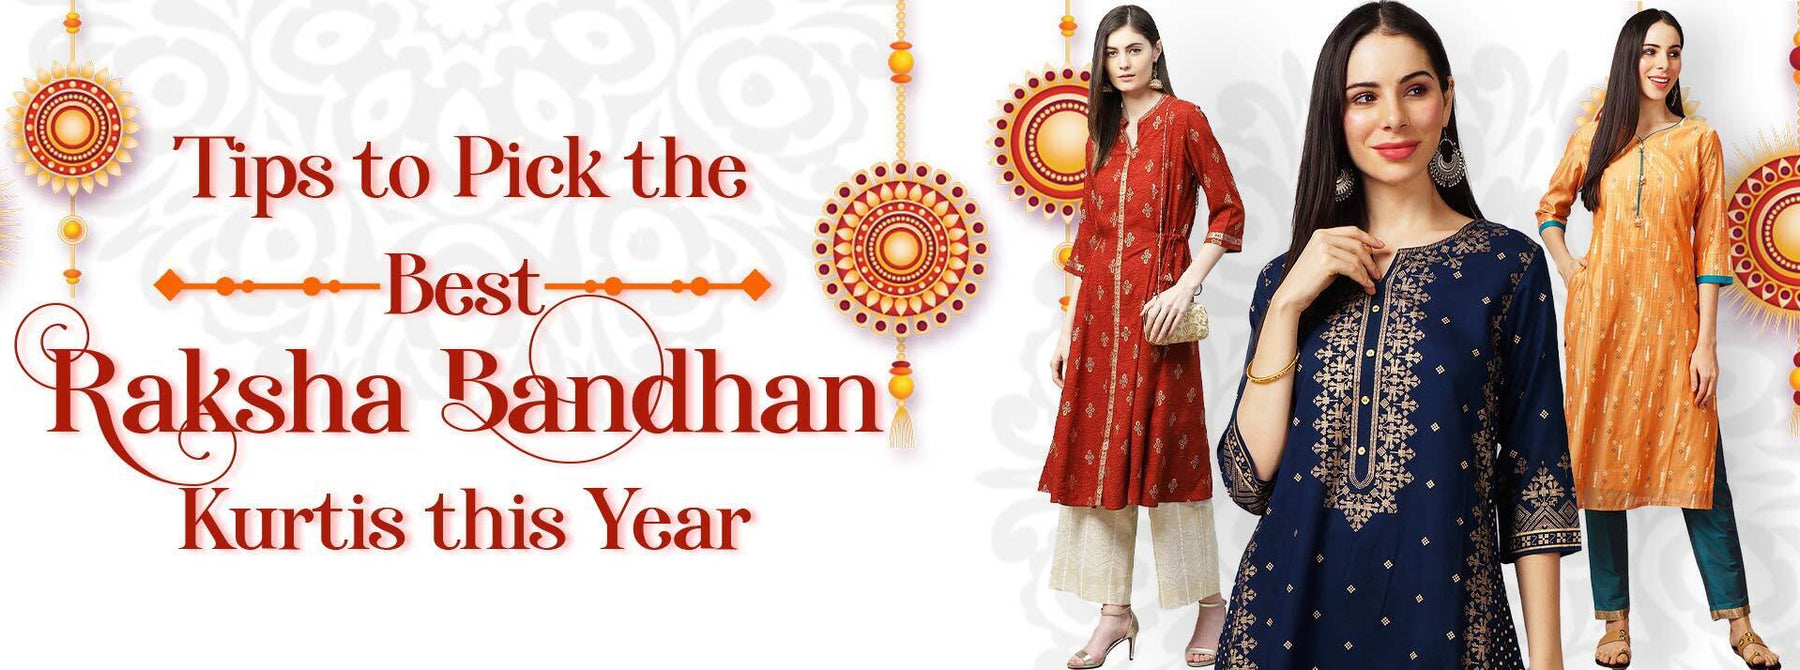 Tips to Pick the Best Raksha Bandhan Kurtis this Year